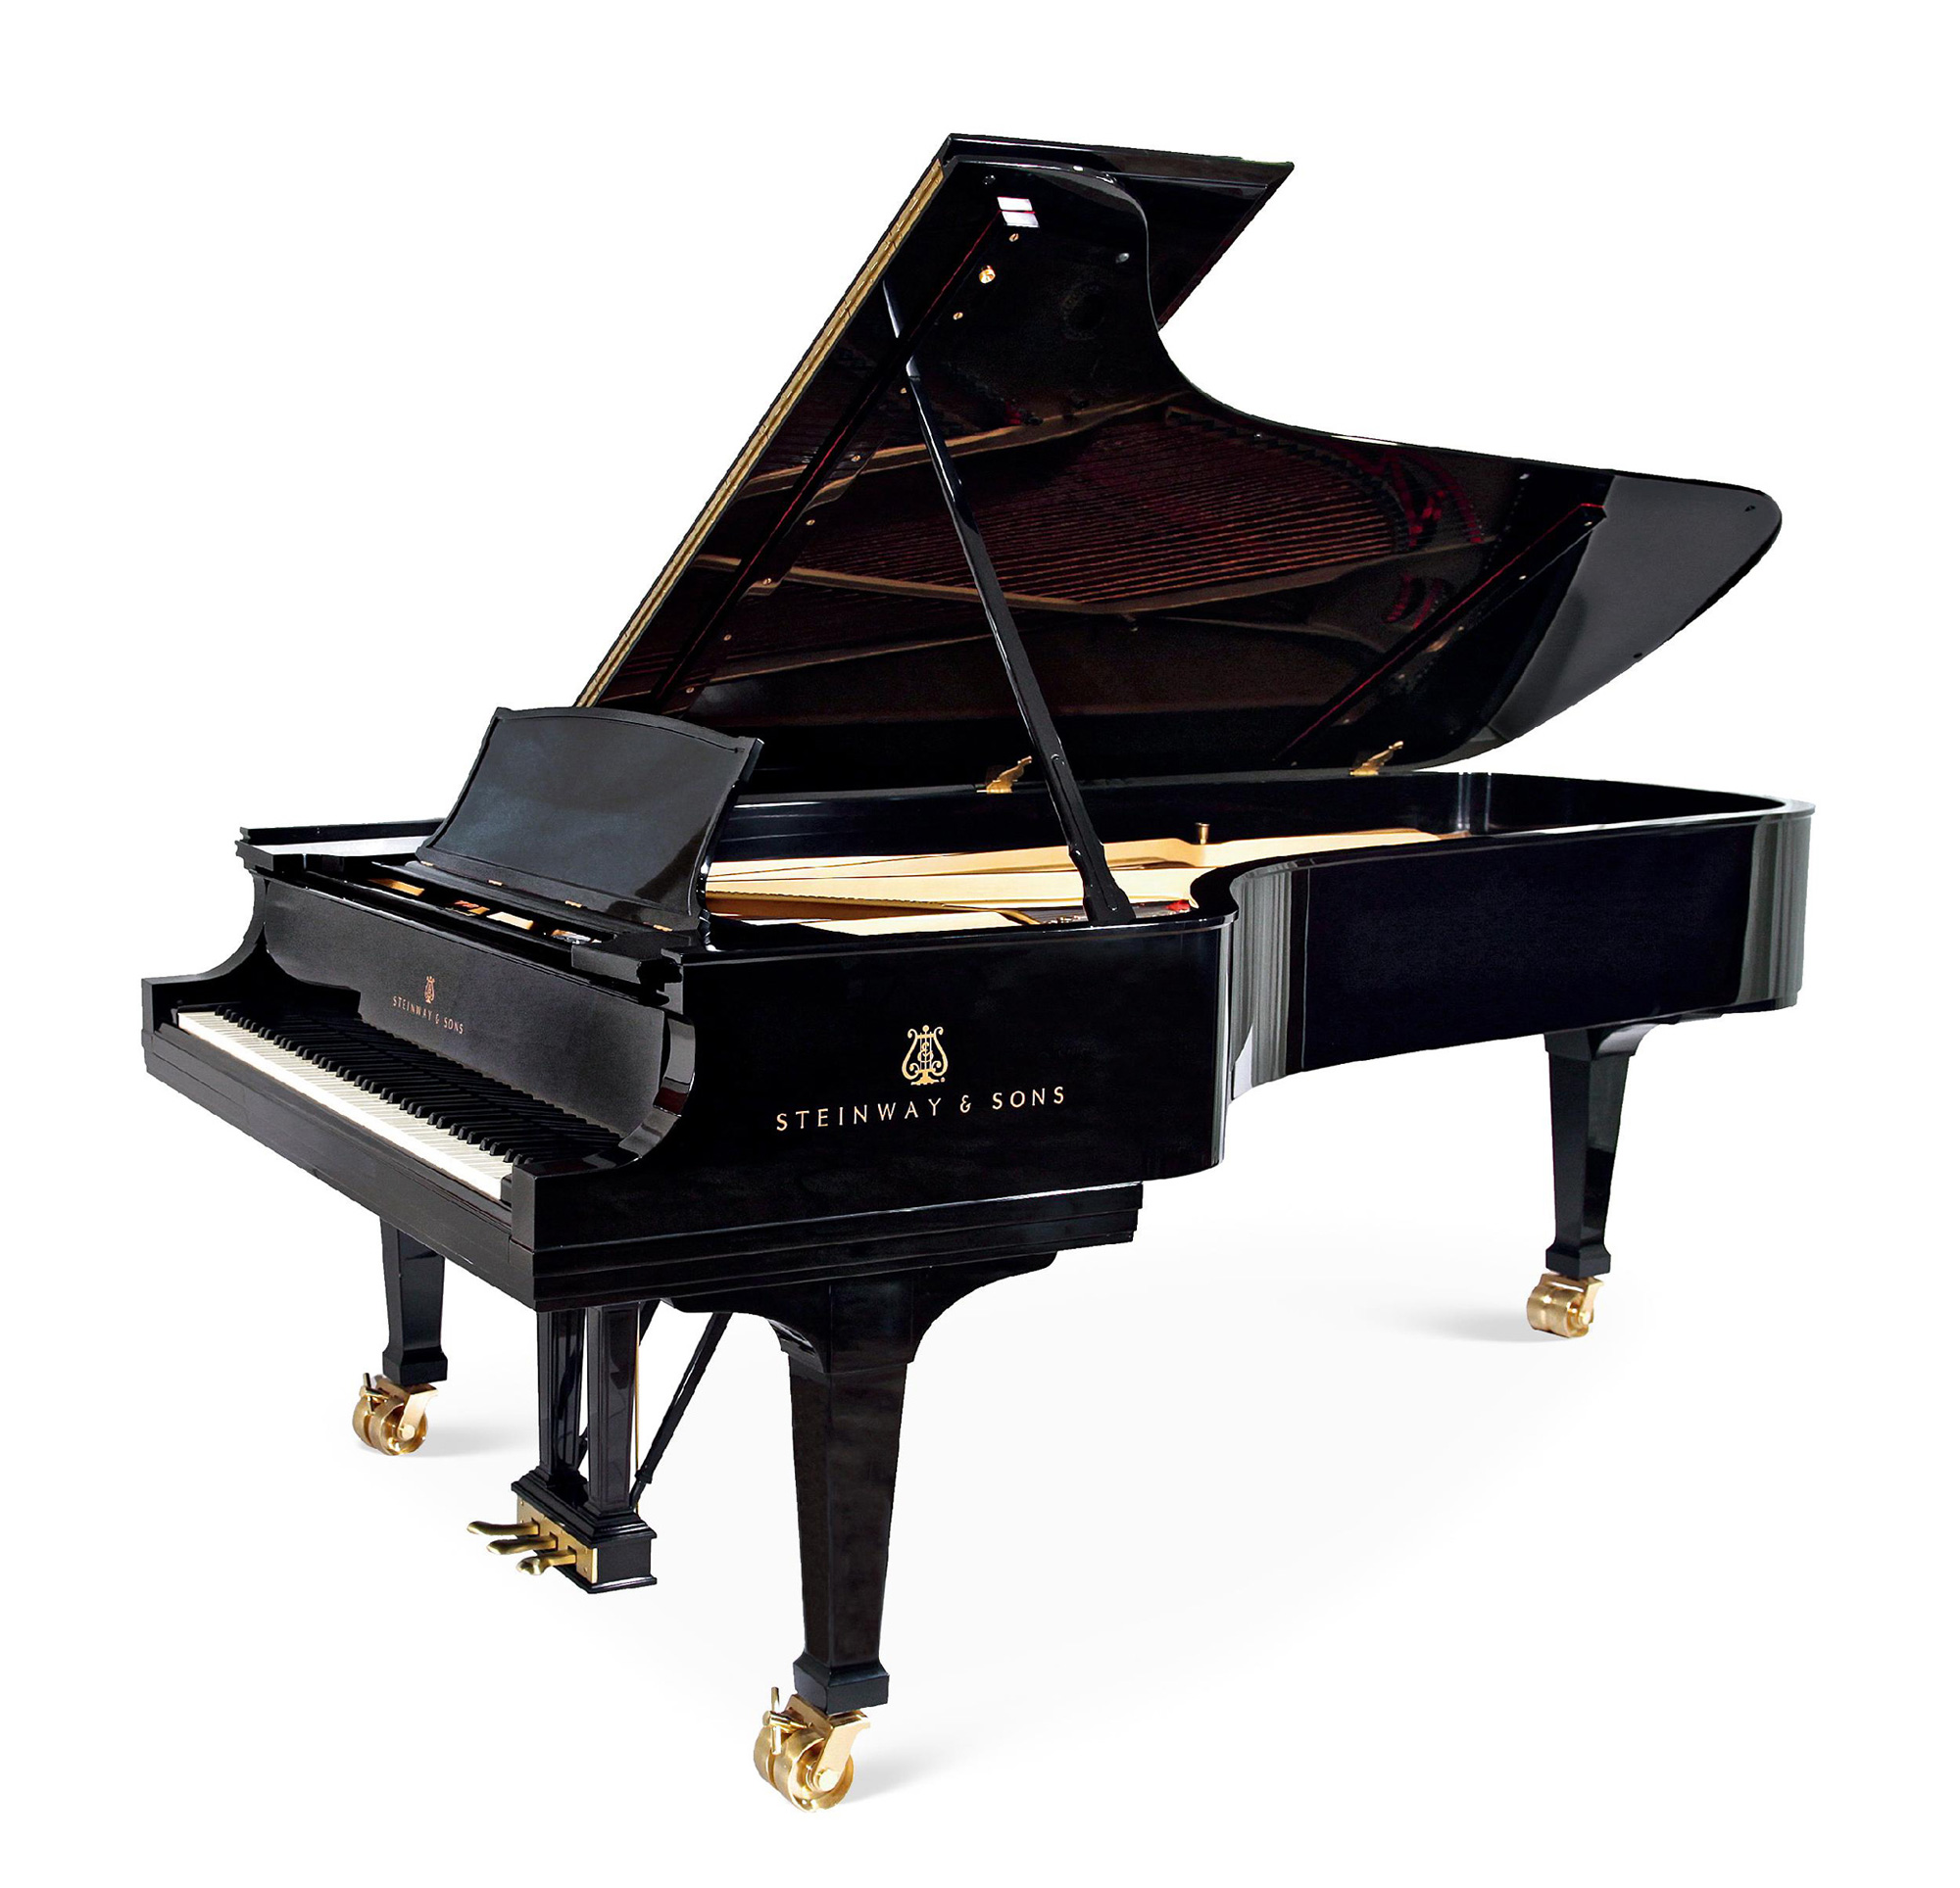 84191912年美国施坦威大型演奏级三角钢琴著名钢琴家范克莱本旧藏